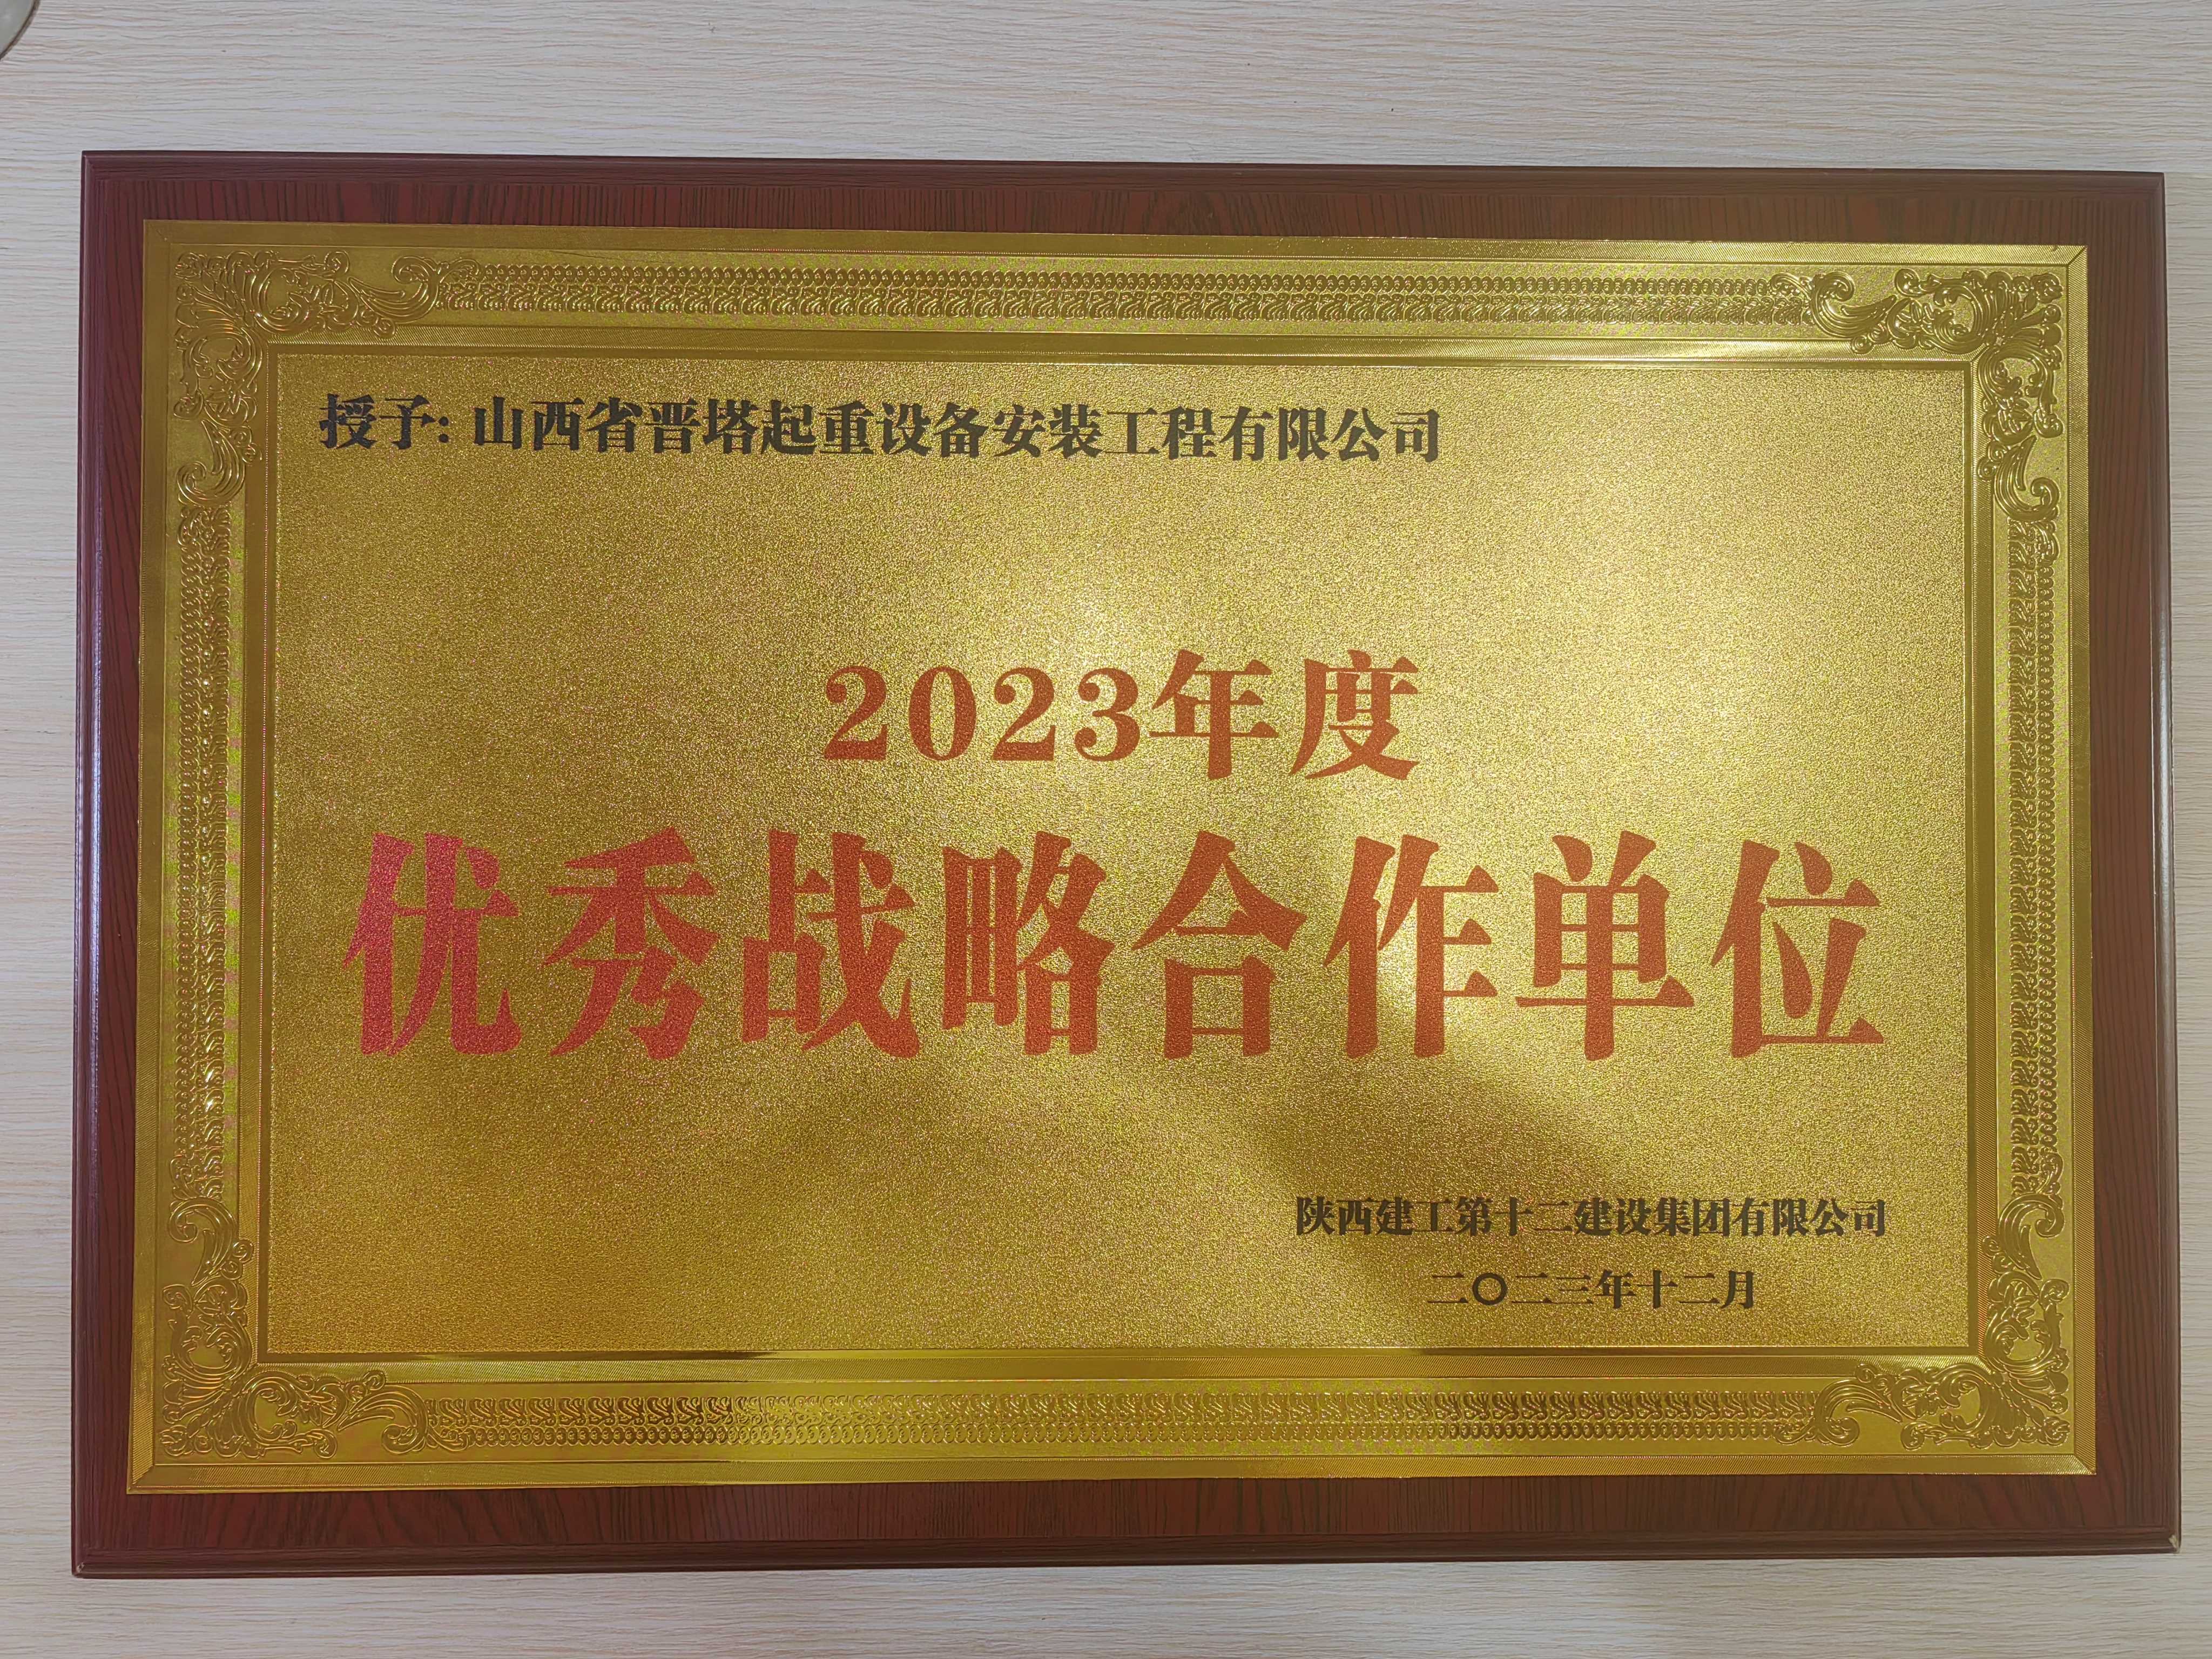 公司荣获陕西建工第十二建设集团 有限公司“2023年度优秀战略合作单位”荣誉称号